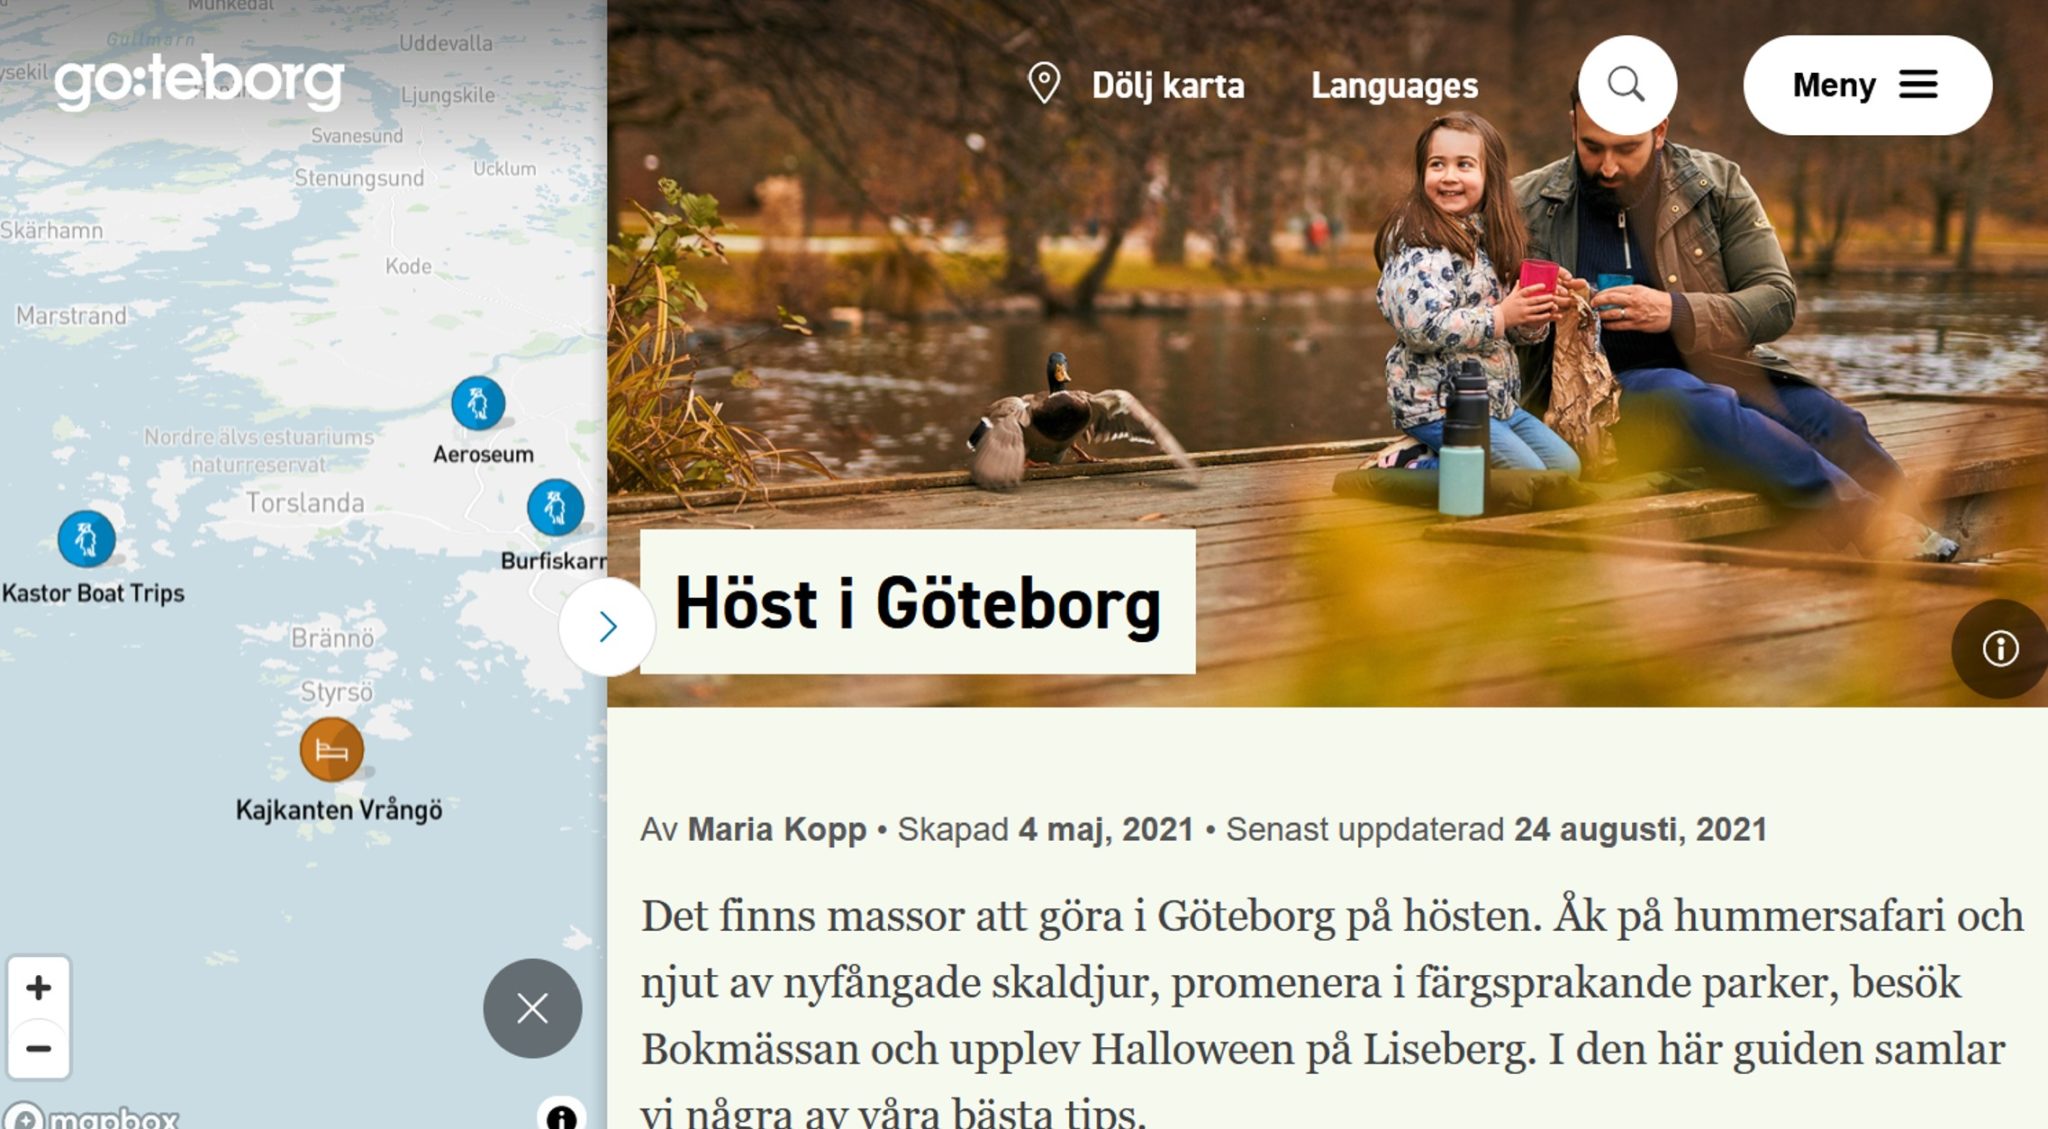 Bild som visar exempel från hemsidan goteborg.com. 